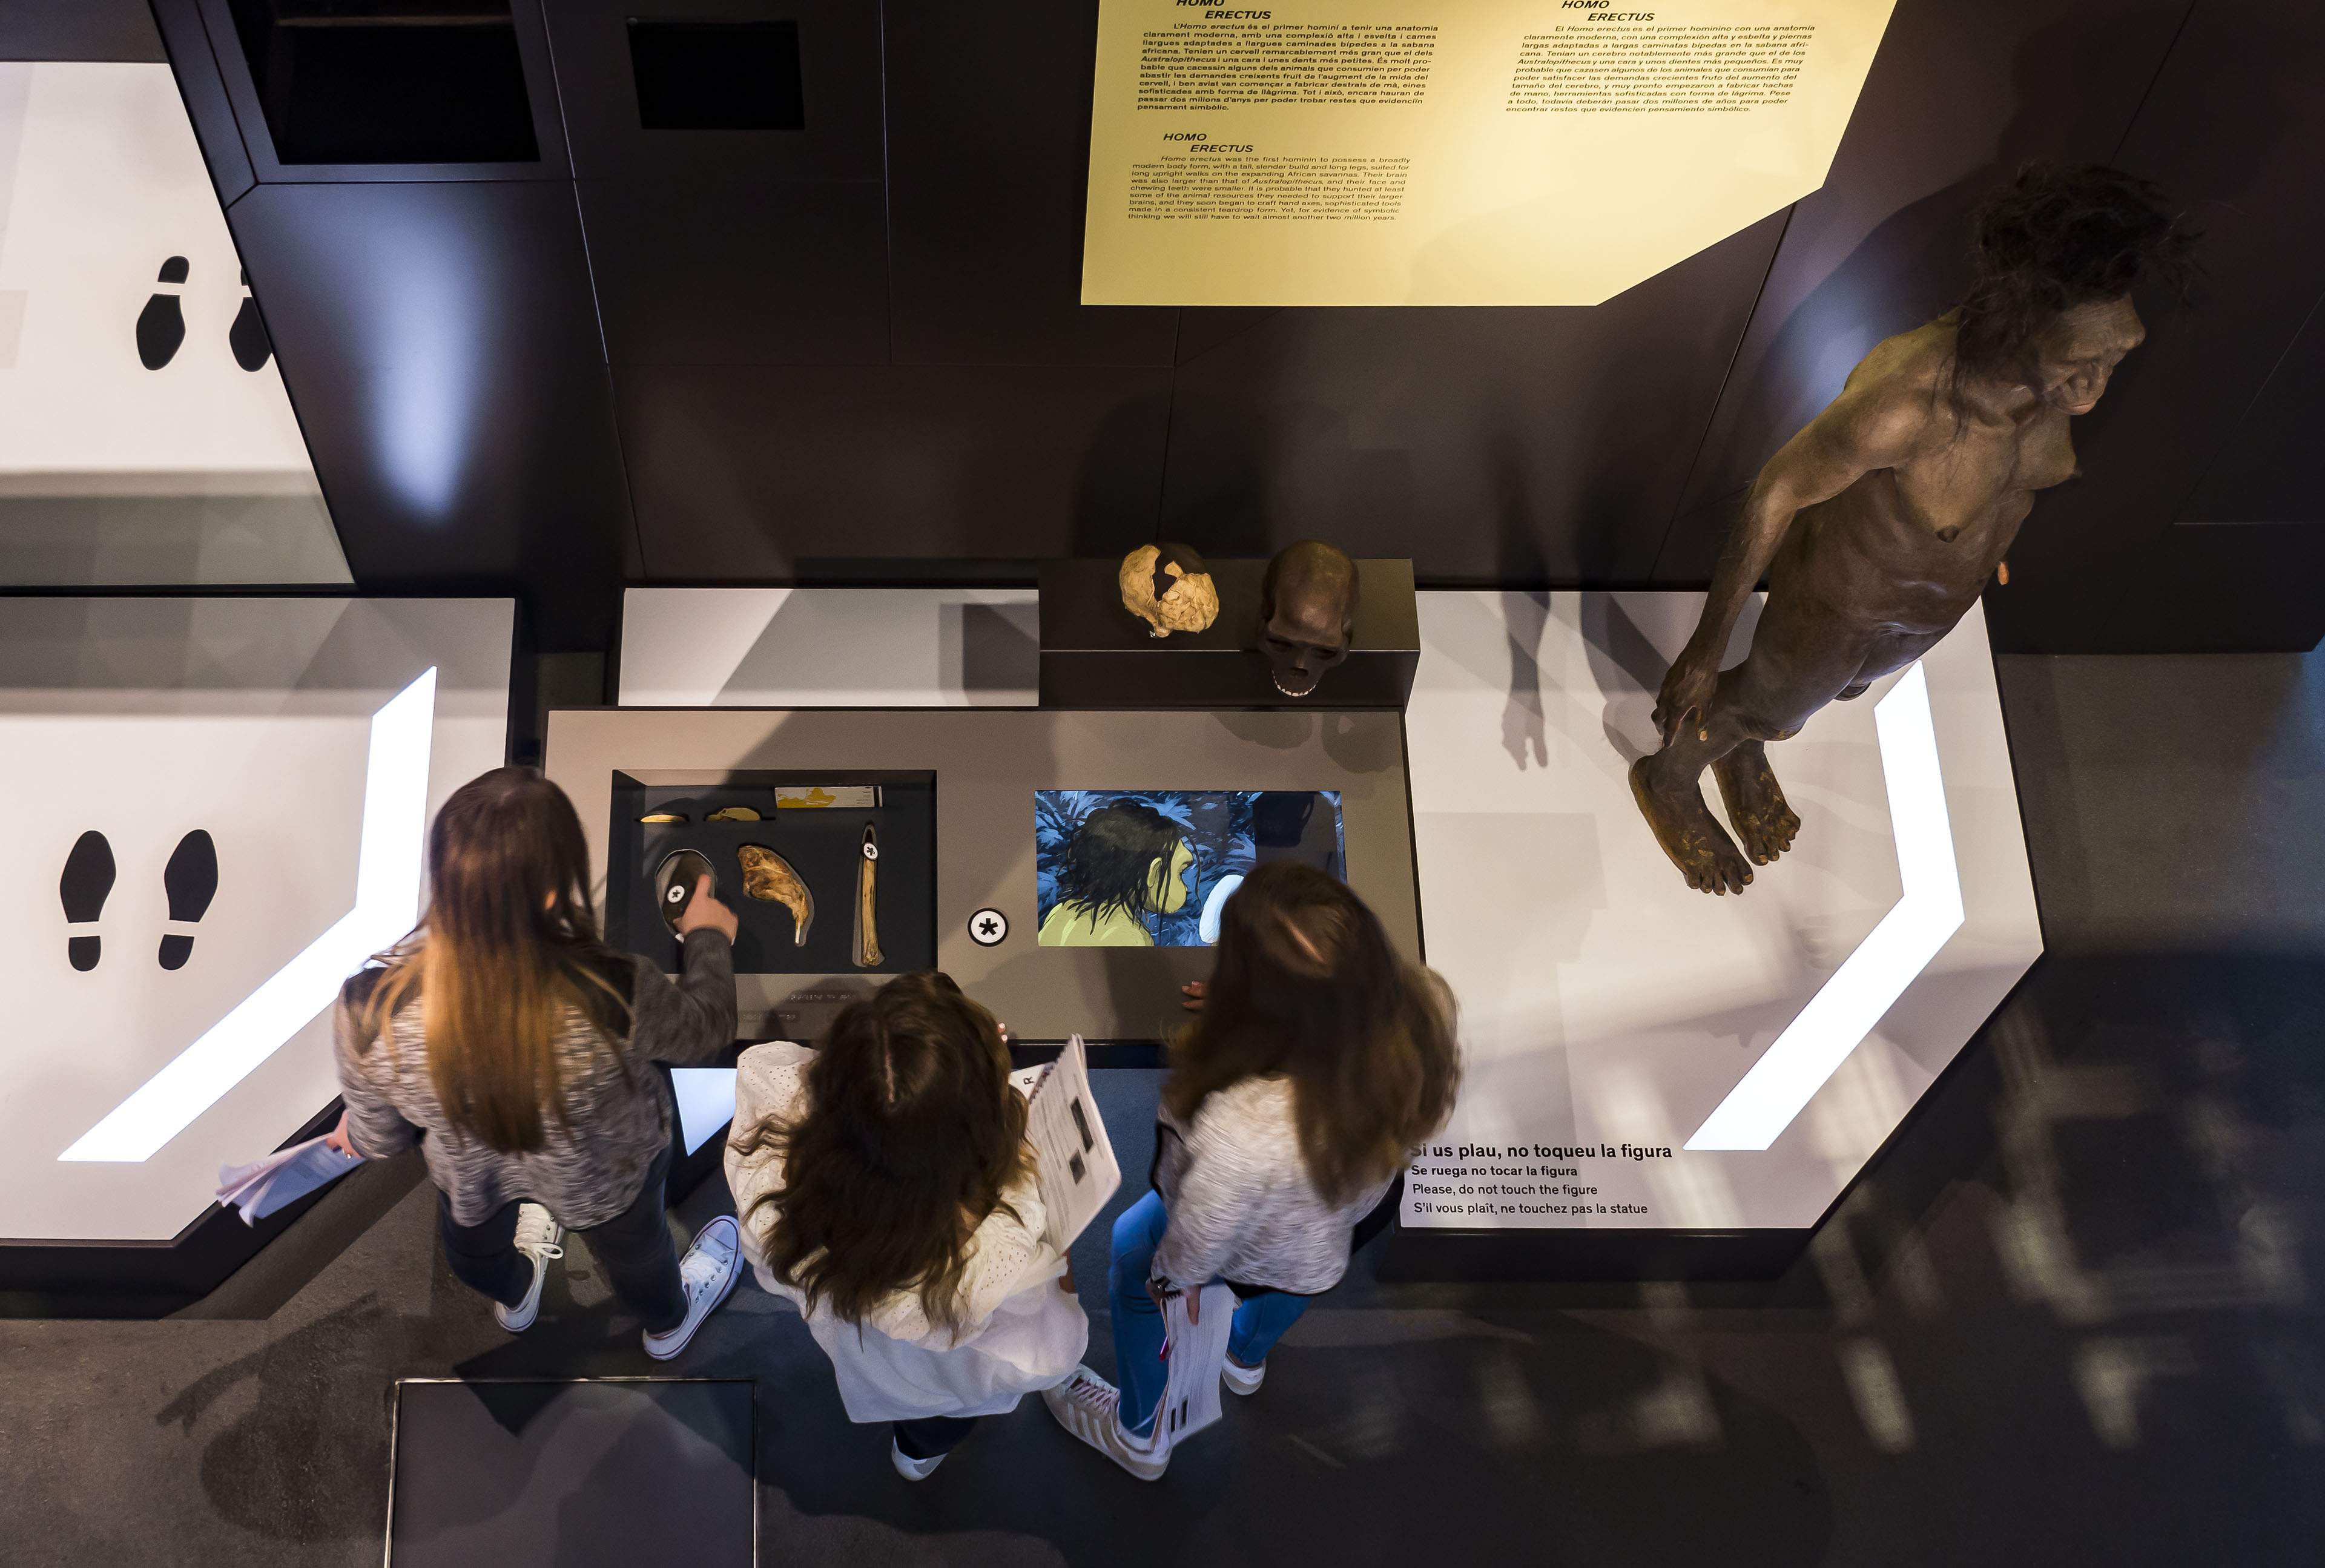 interactive-exhibition-talking-brains-cosmocaixa-barcelona-spain-image-23